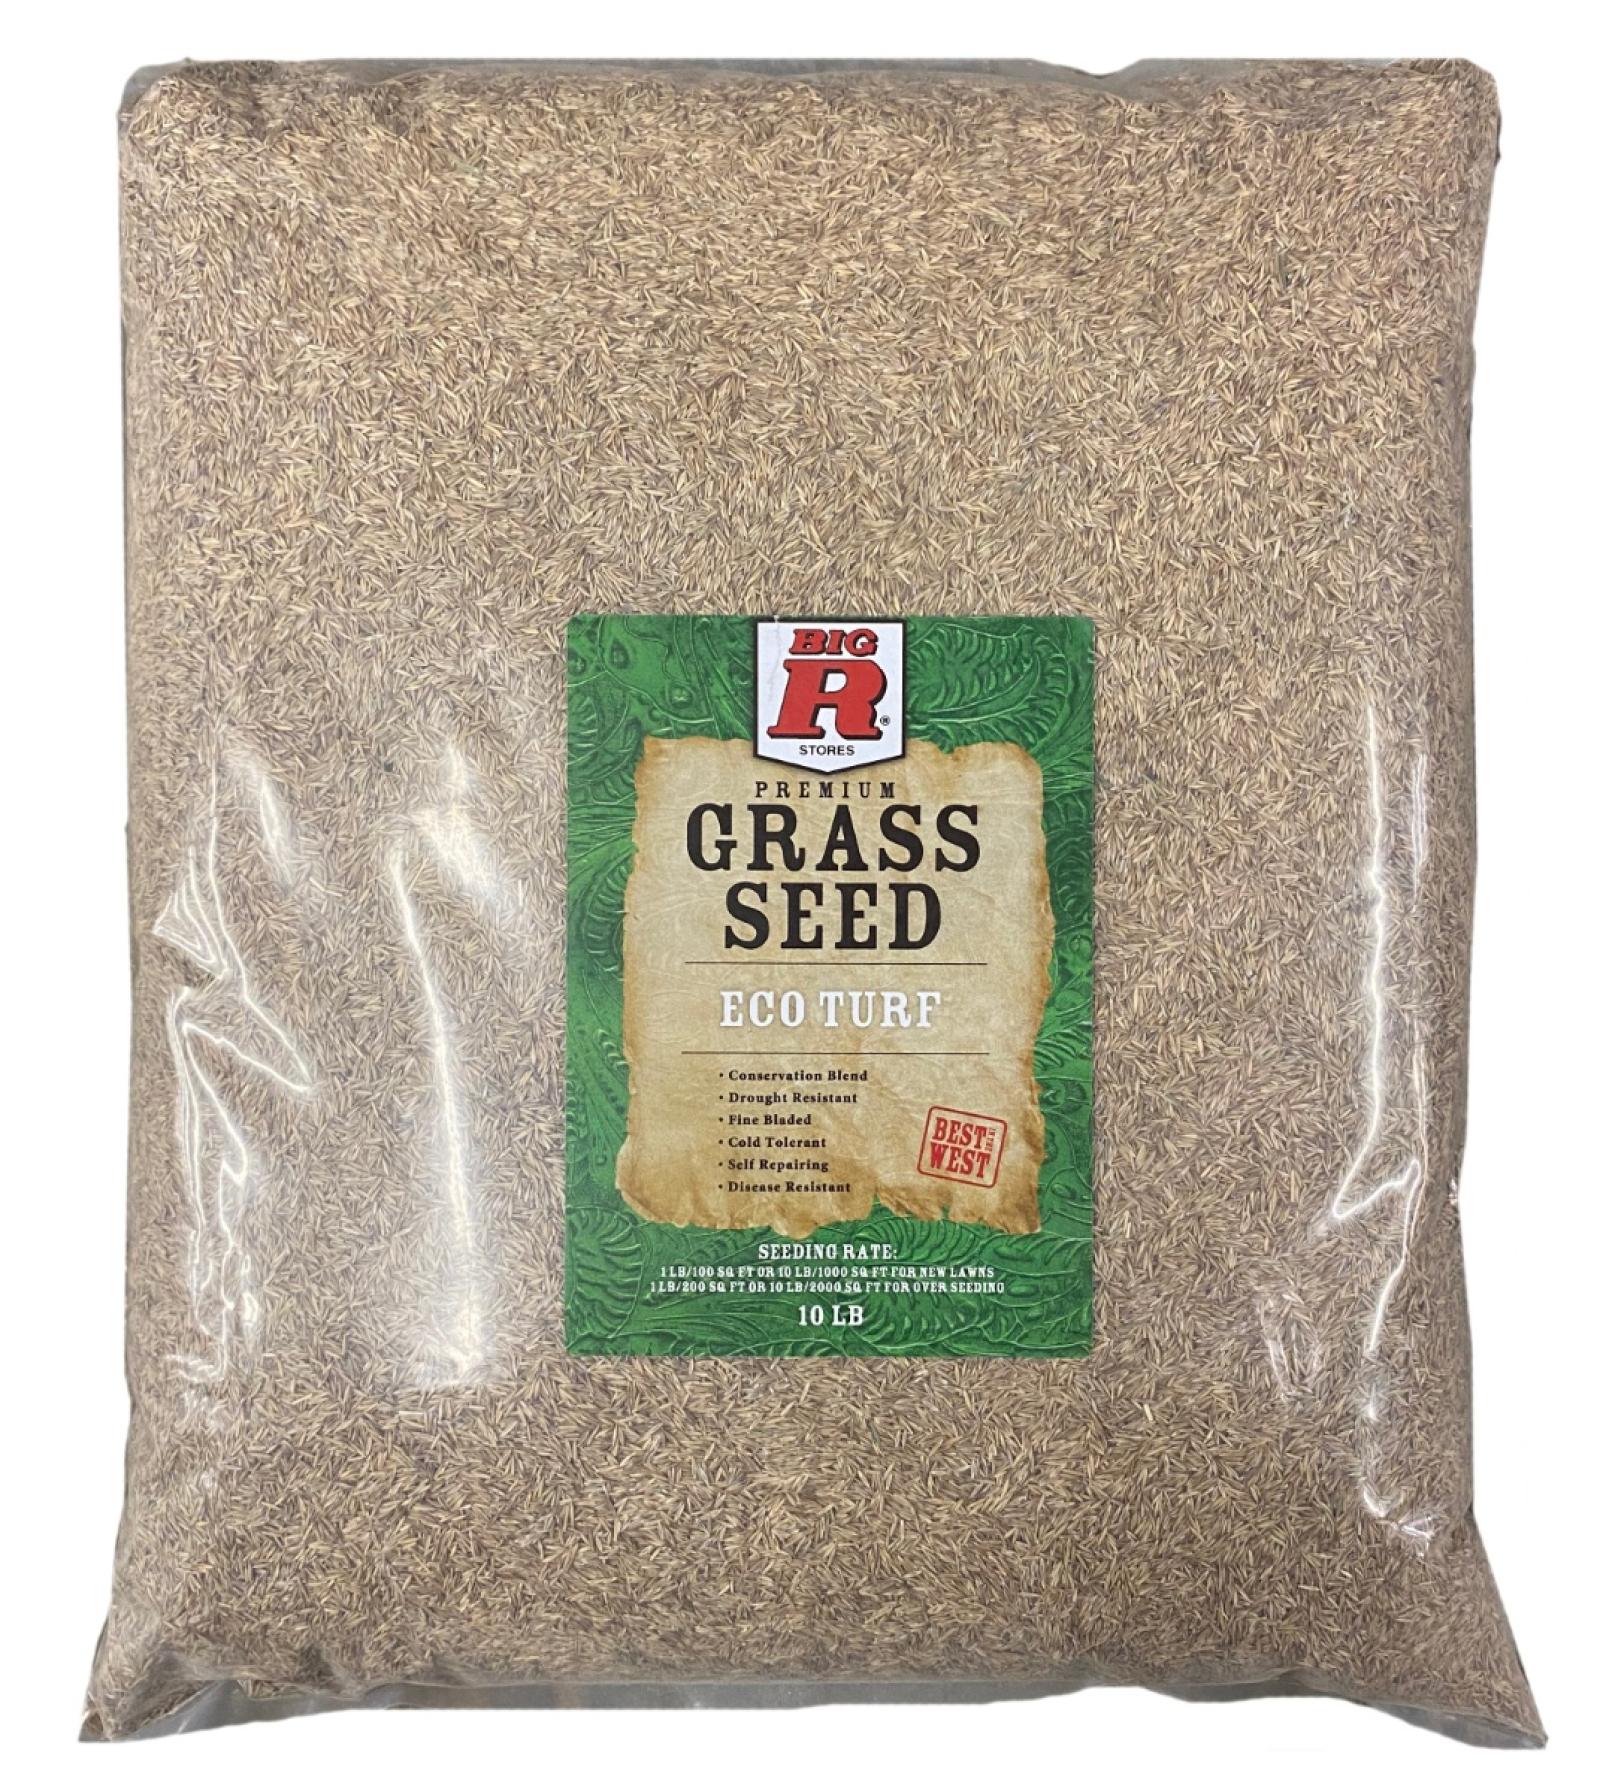 Shipton's Big R Eco Turf Grass Seed